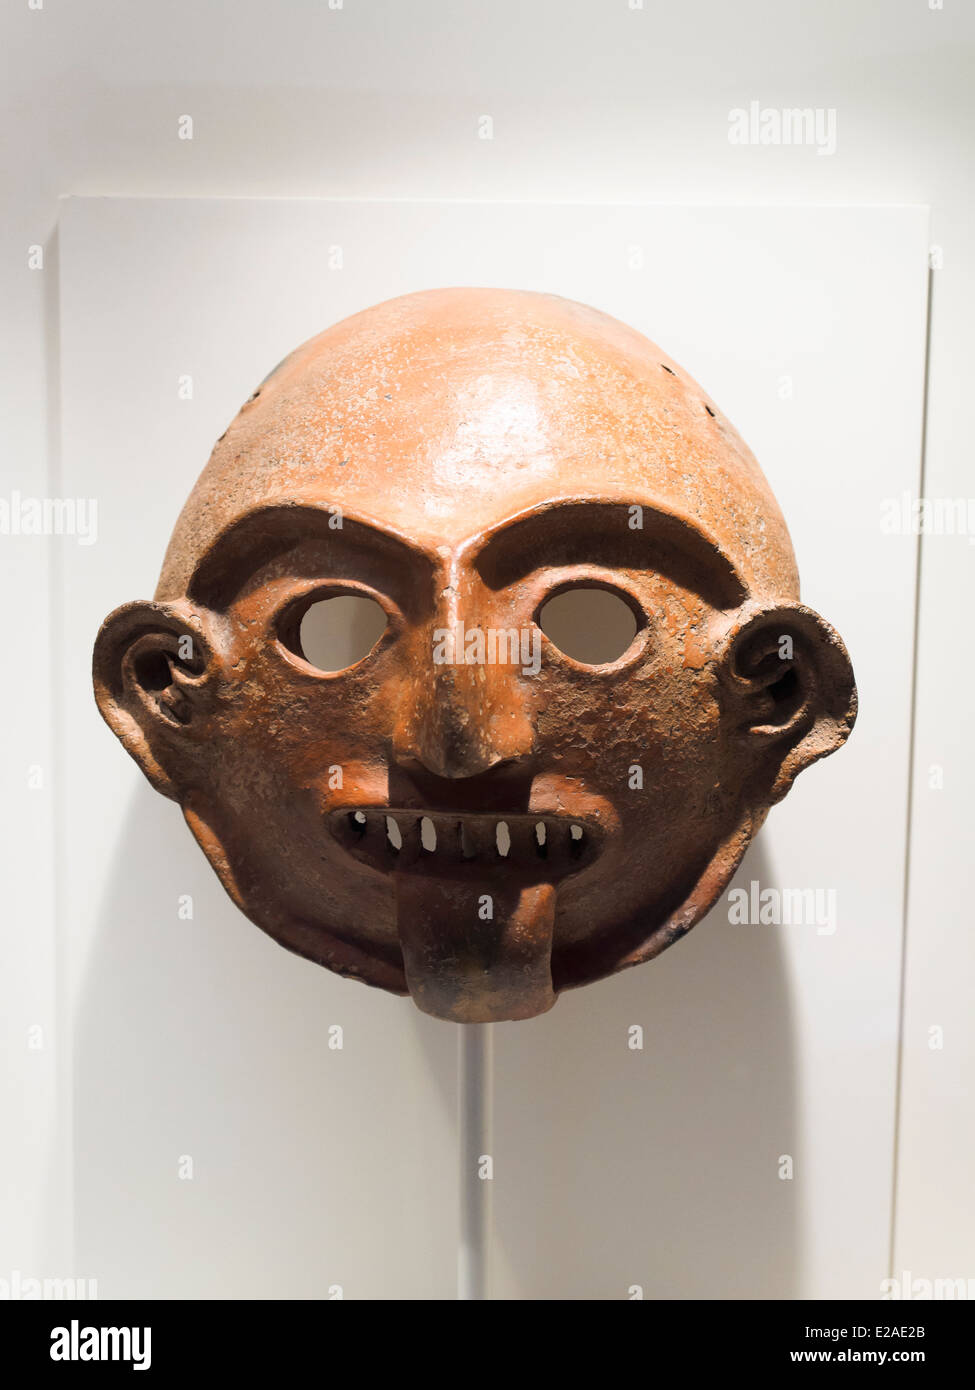 Zeremoniell Grabbeigaben Maske Vicus formative Periode 1250 v. Chr. - 1 n. Chr. Museo de Arte Precolombino, Cusco - Peru diese Maske veranschaulichen die künstlerischen Elemente der Vicus Kultur. Die Gesichtszüge, beladen mit einem großen geometrischen Sinn zu übertrieben Details wie Augenbrauen, Ohren und Zähne verbessern. Es ist möglich, die offensichtliche Absicht, Vereinfachung der menschlichen Darstellung durch Verringerung der Ausdruck seiner minimalen Substanz wahrnehmen. Aus Urzeiten Menschen zu verbergen oder zu sublimieren Zustand ihrer eigenen 'menschlich' in Reihenfolge zu erwerben - aber vorübergehend - das Wesen der höheren Wesen. Stockfoto